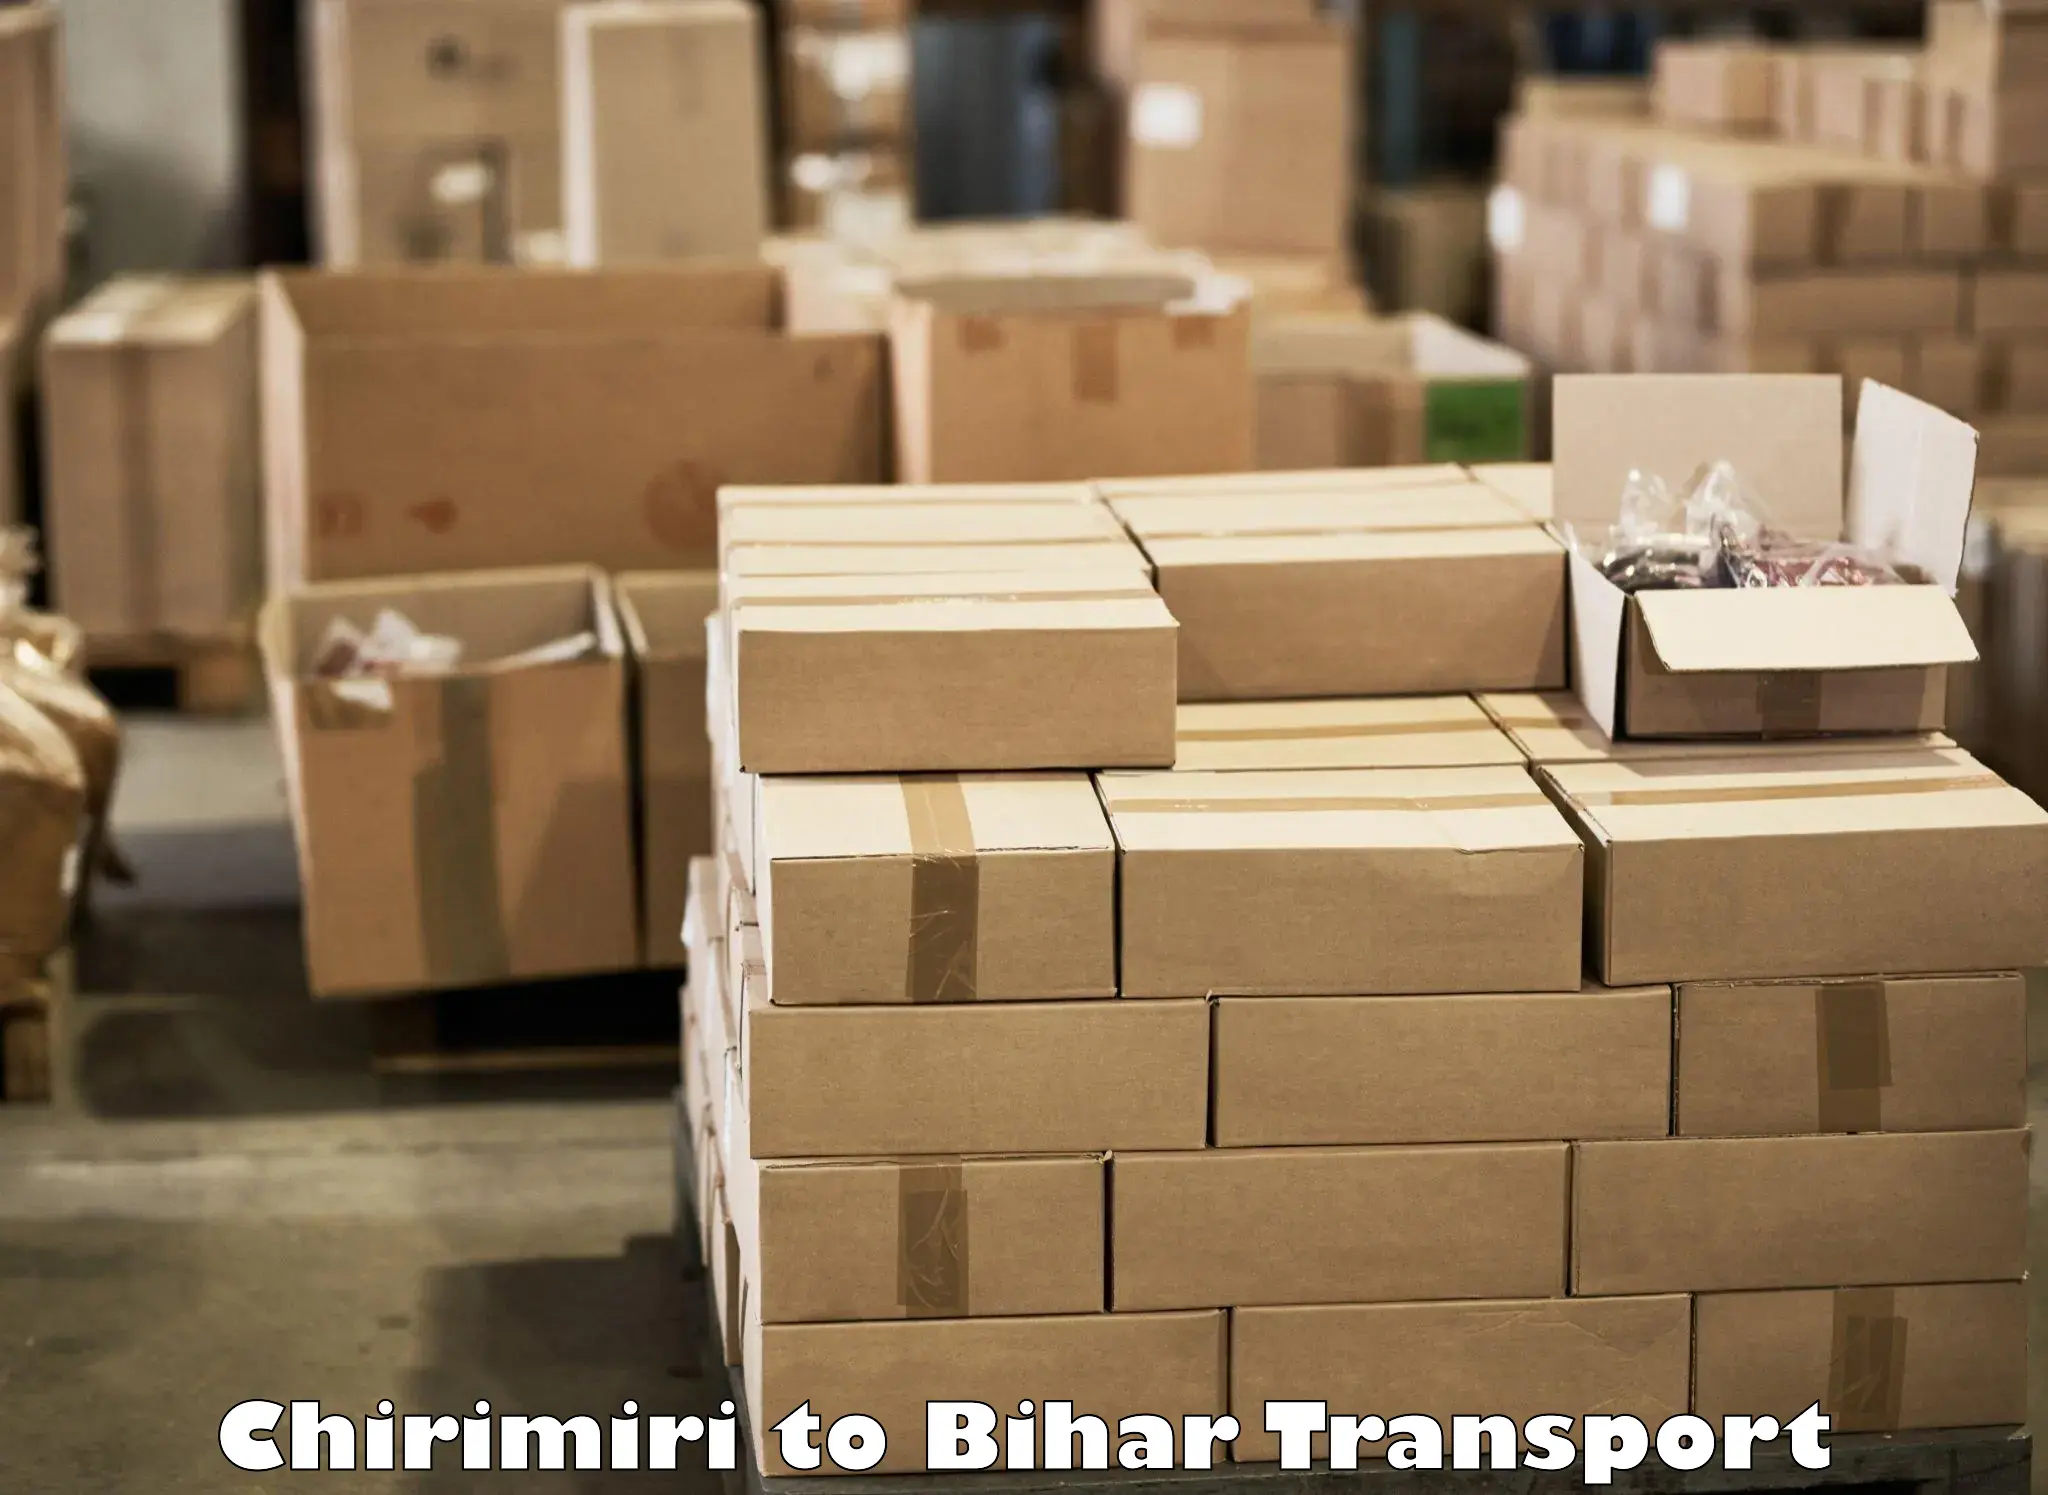 Daily transport service Chirimiri to Barachati